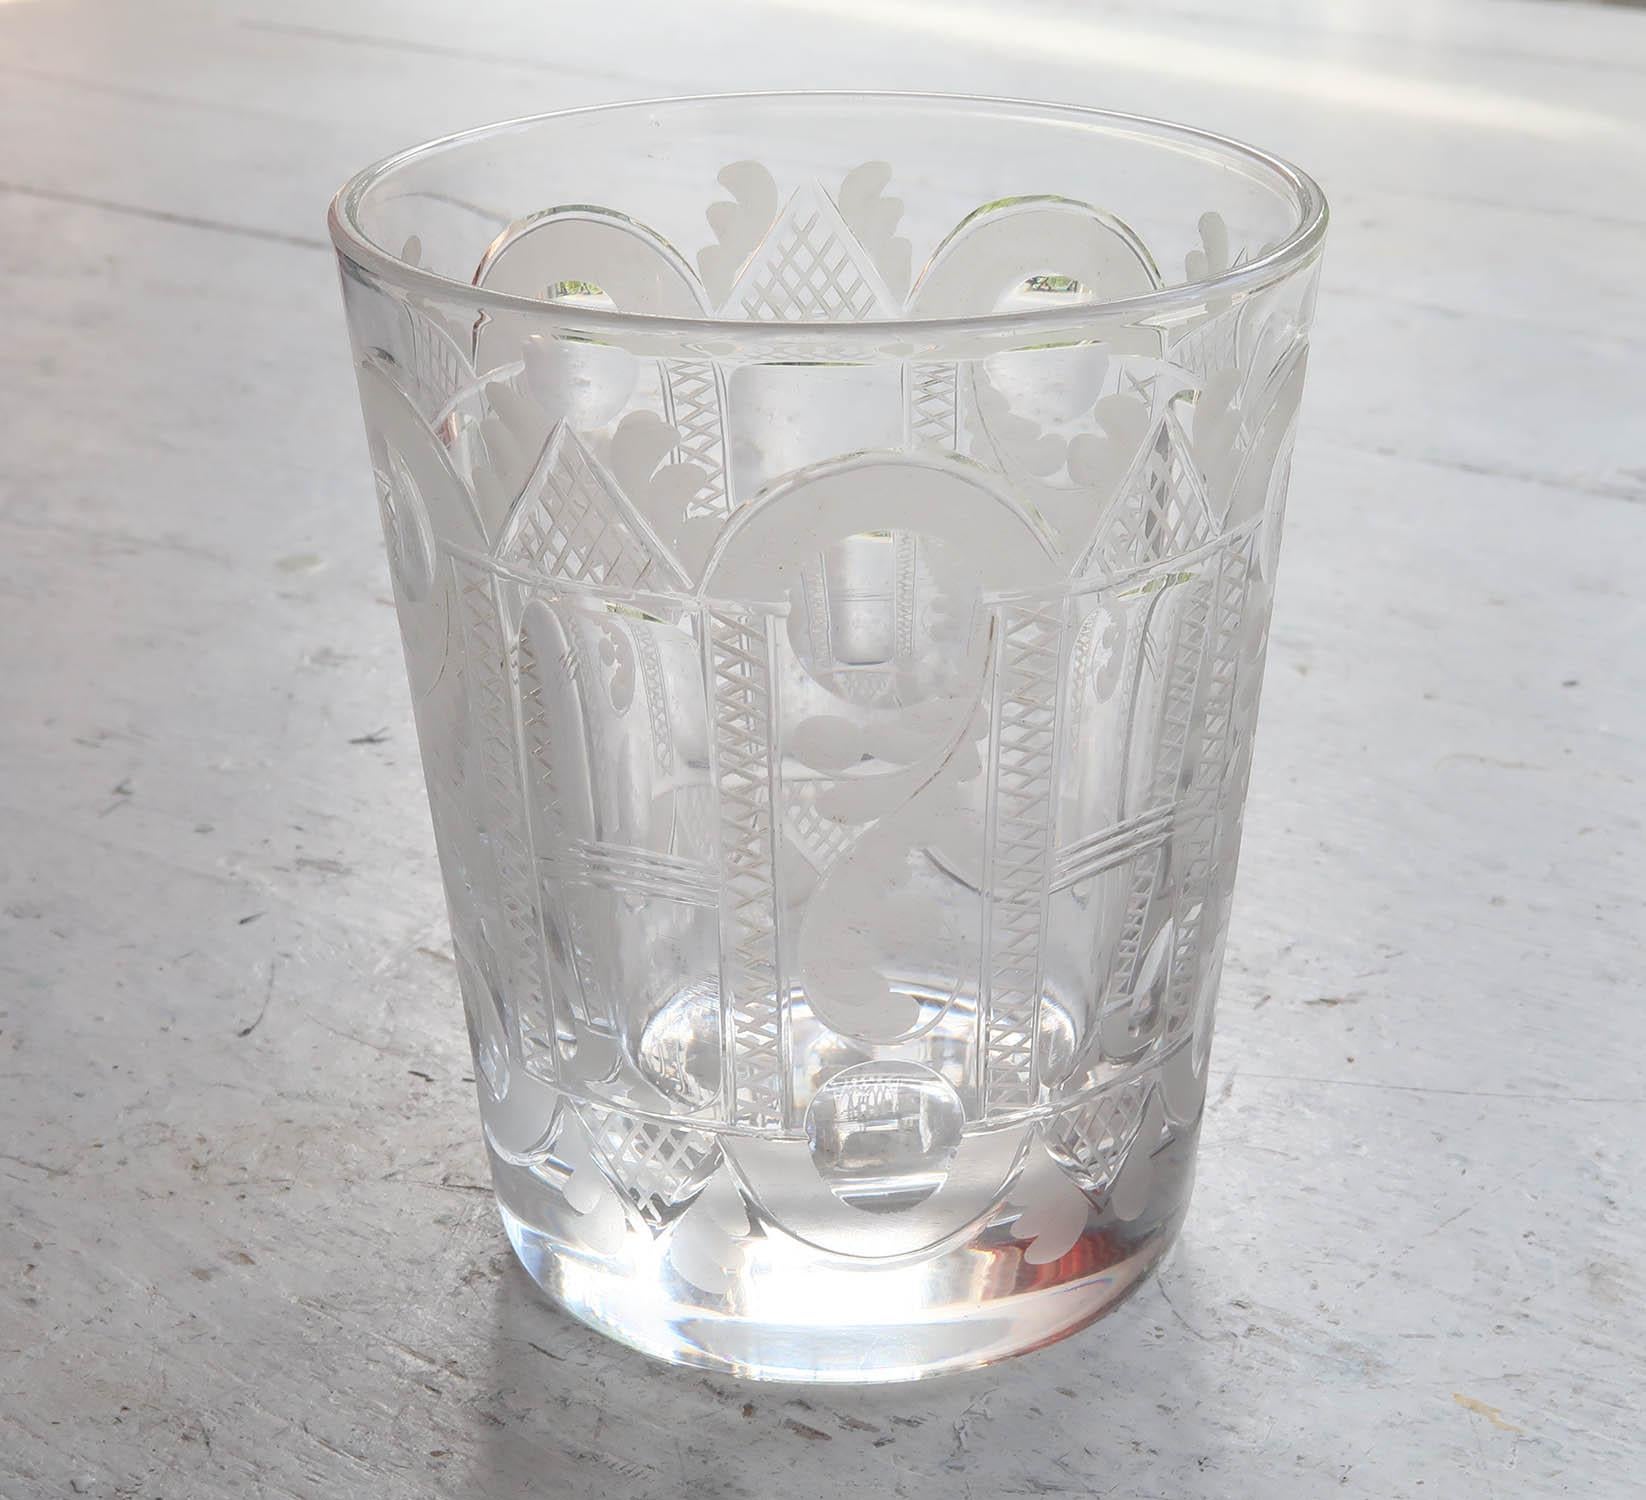 Wunderschöner Whisky-Tumbler im georgianischen Stil

Ungewöhnlichstes fast architektonisches Ornament

Fein geschliffenes, graviertes und geätztes Kristall.

Sehr angenehm zu benutzen.

Schwere Qualität

 In perfektem Zustand.

